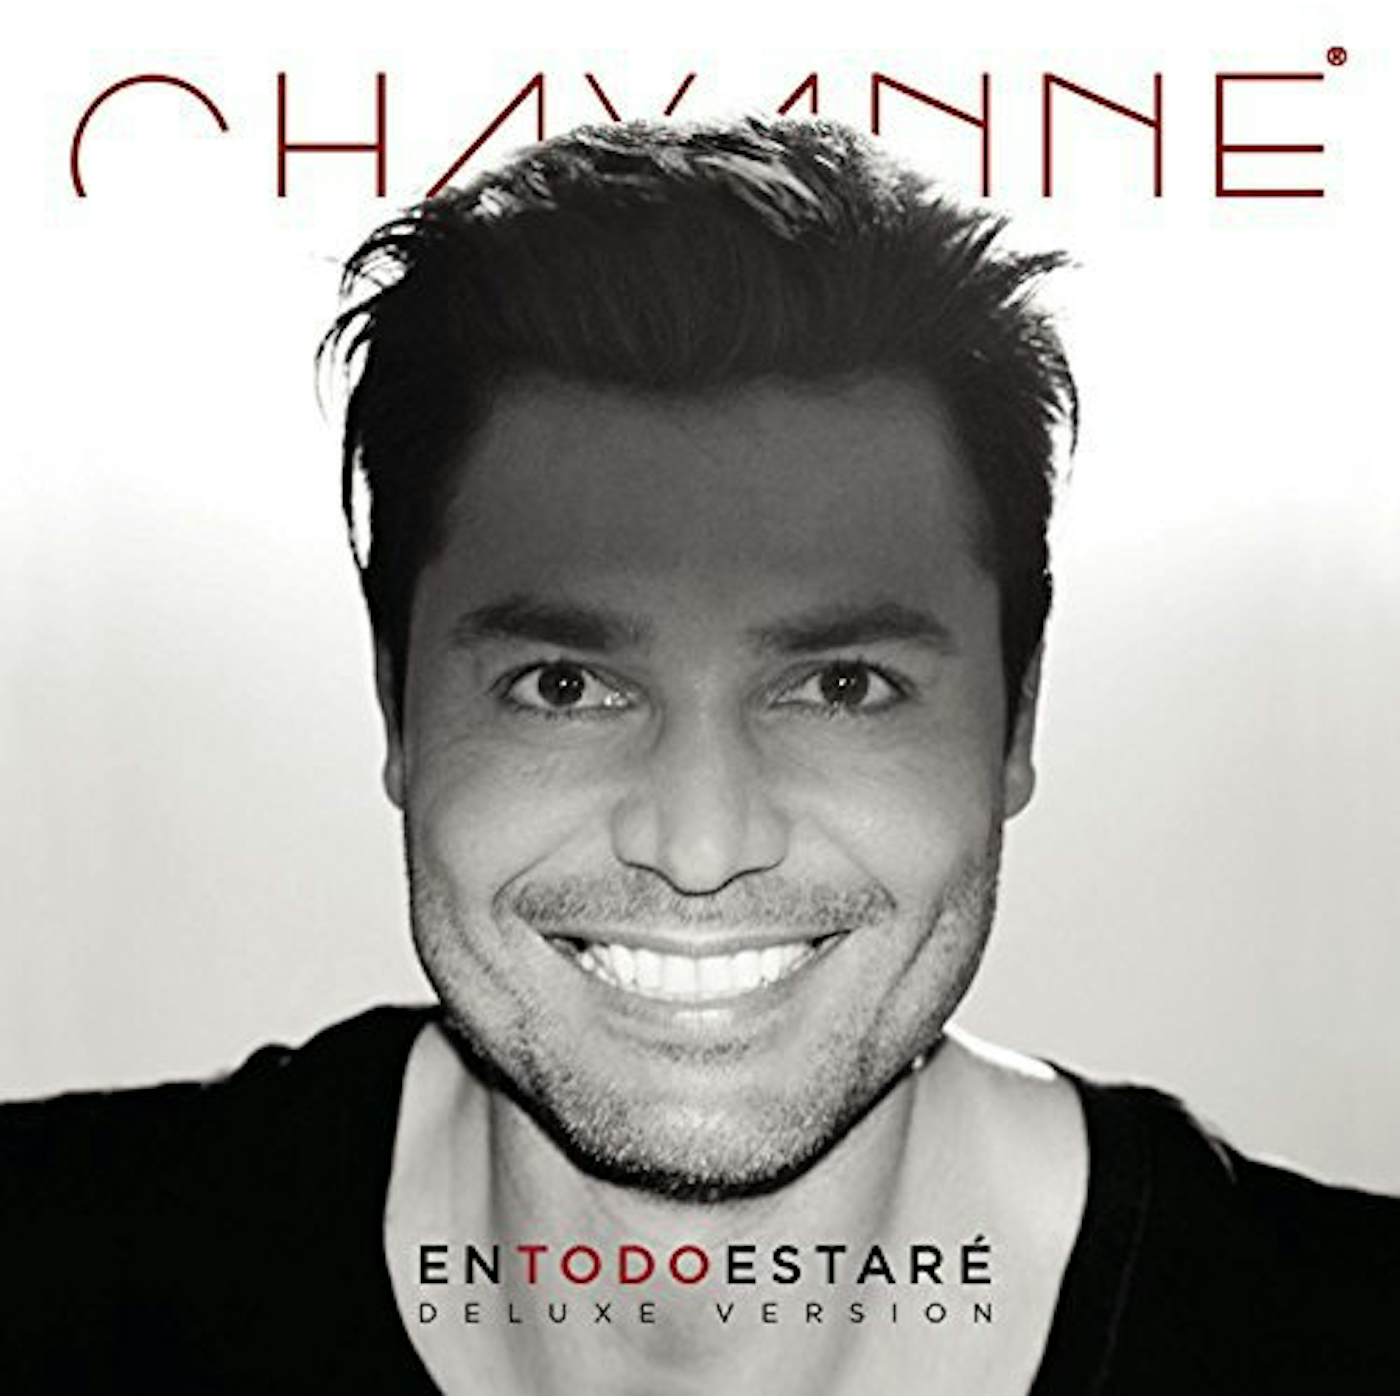 Chayanne EN TODO ESTARE CD